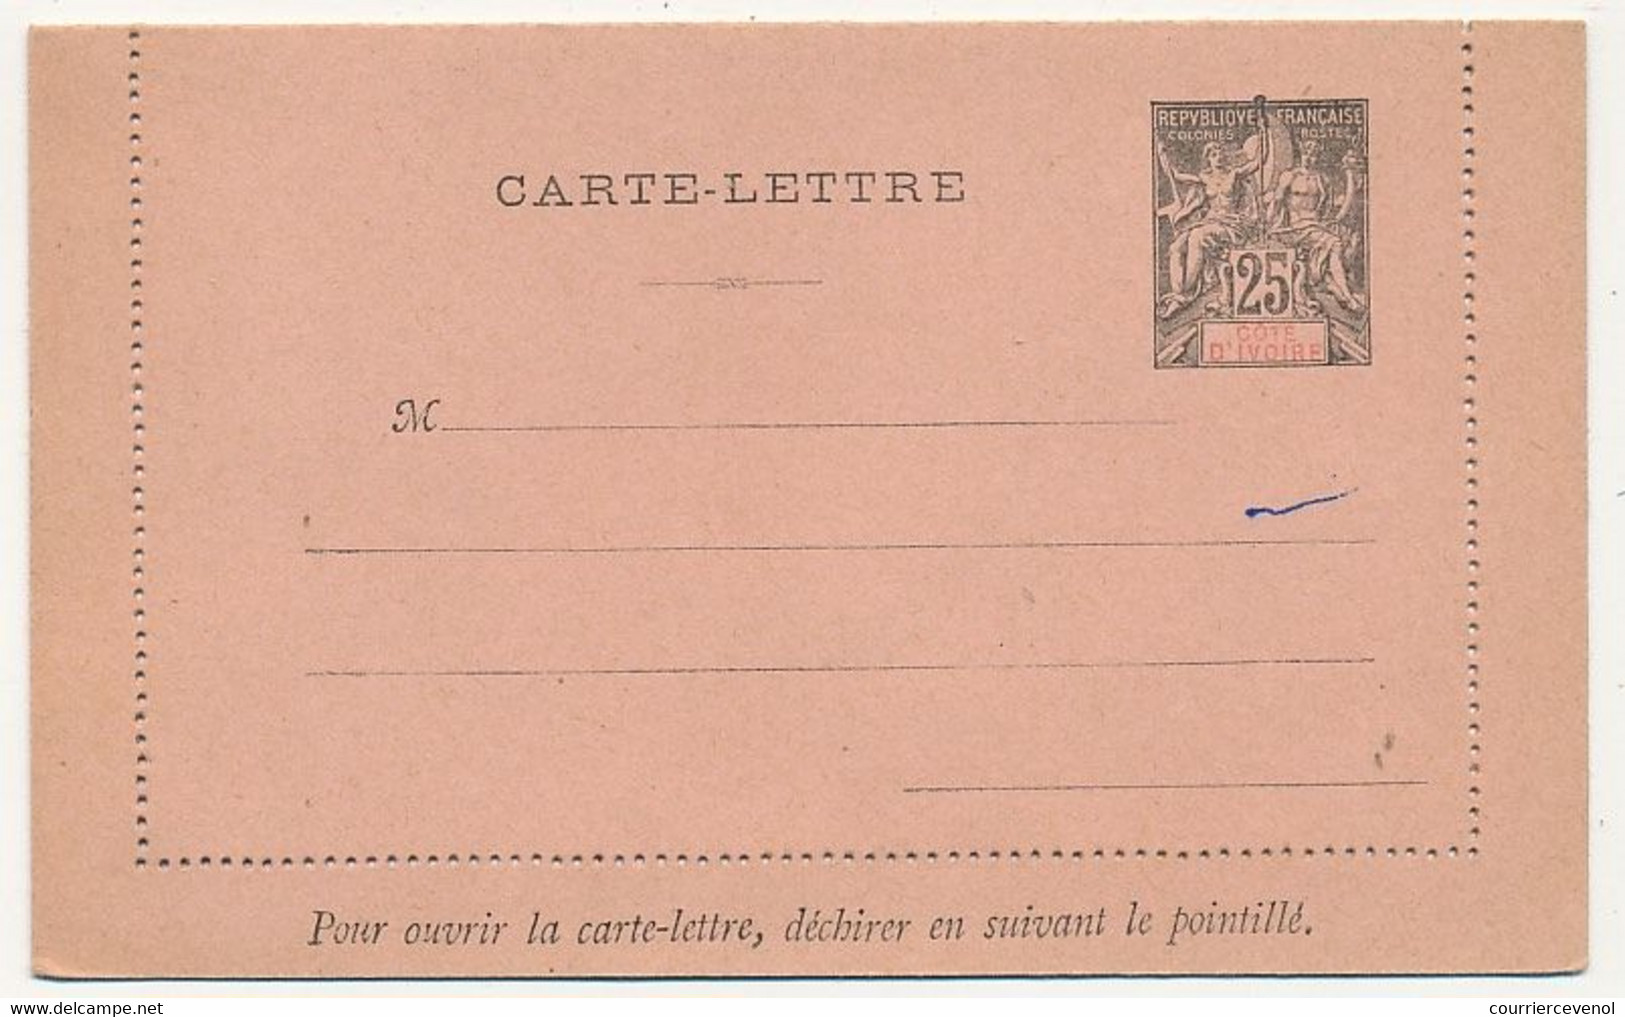 COTE D'IVOIRE - Entier Postal (Carte-Lettre) 25c Groupe - Ref CL 2 - Ungebraucht